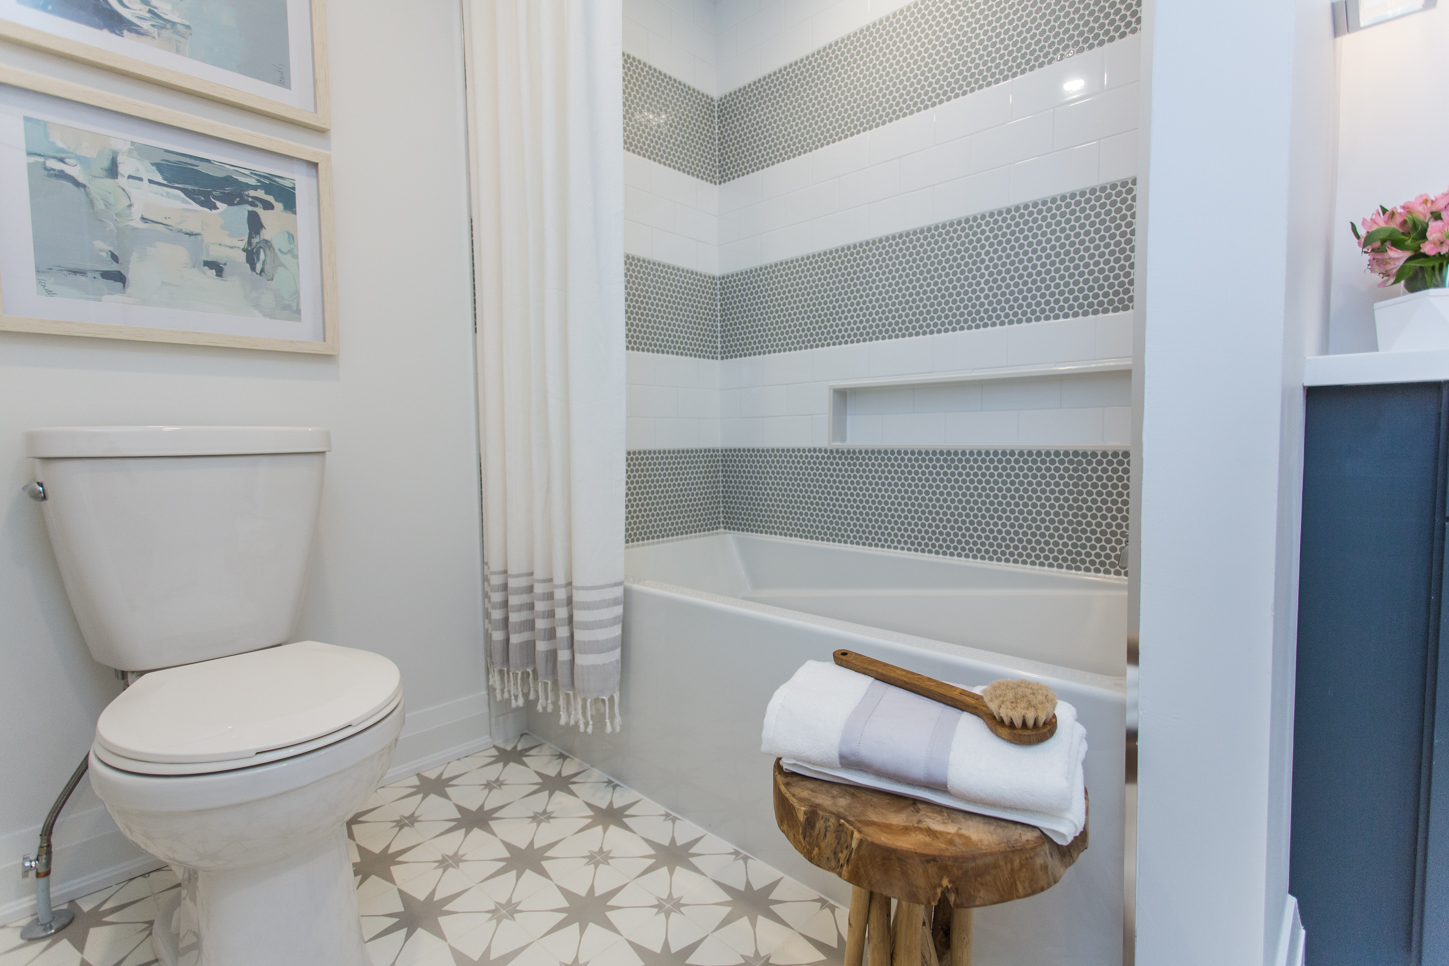 Modern, serene white bathroom with star-patterned floor tiles.